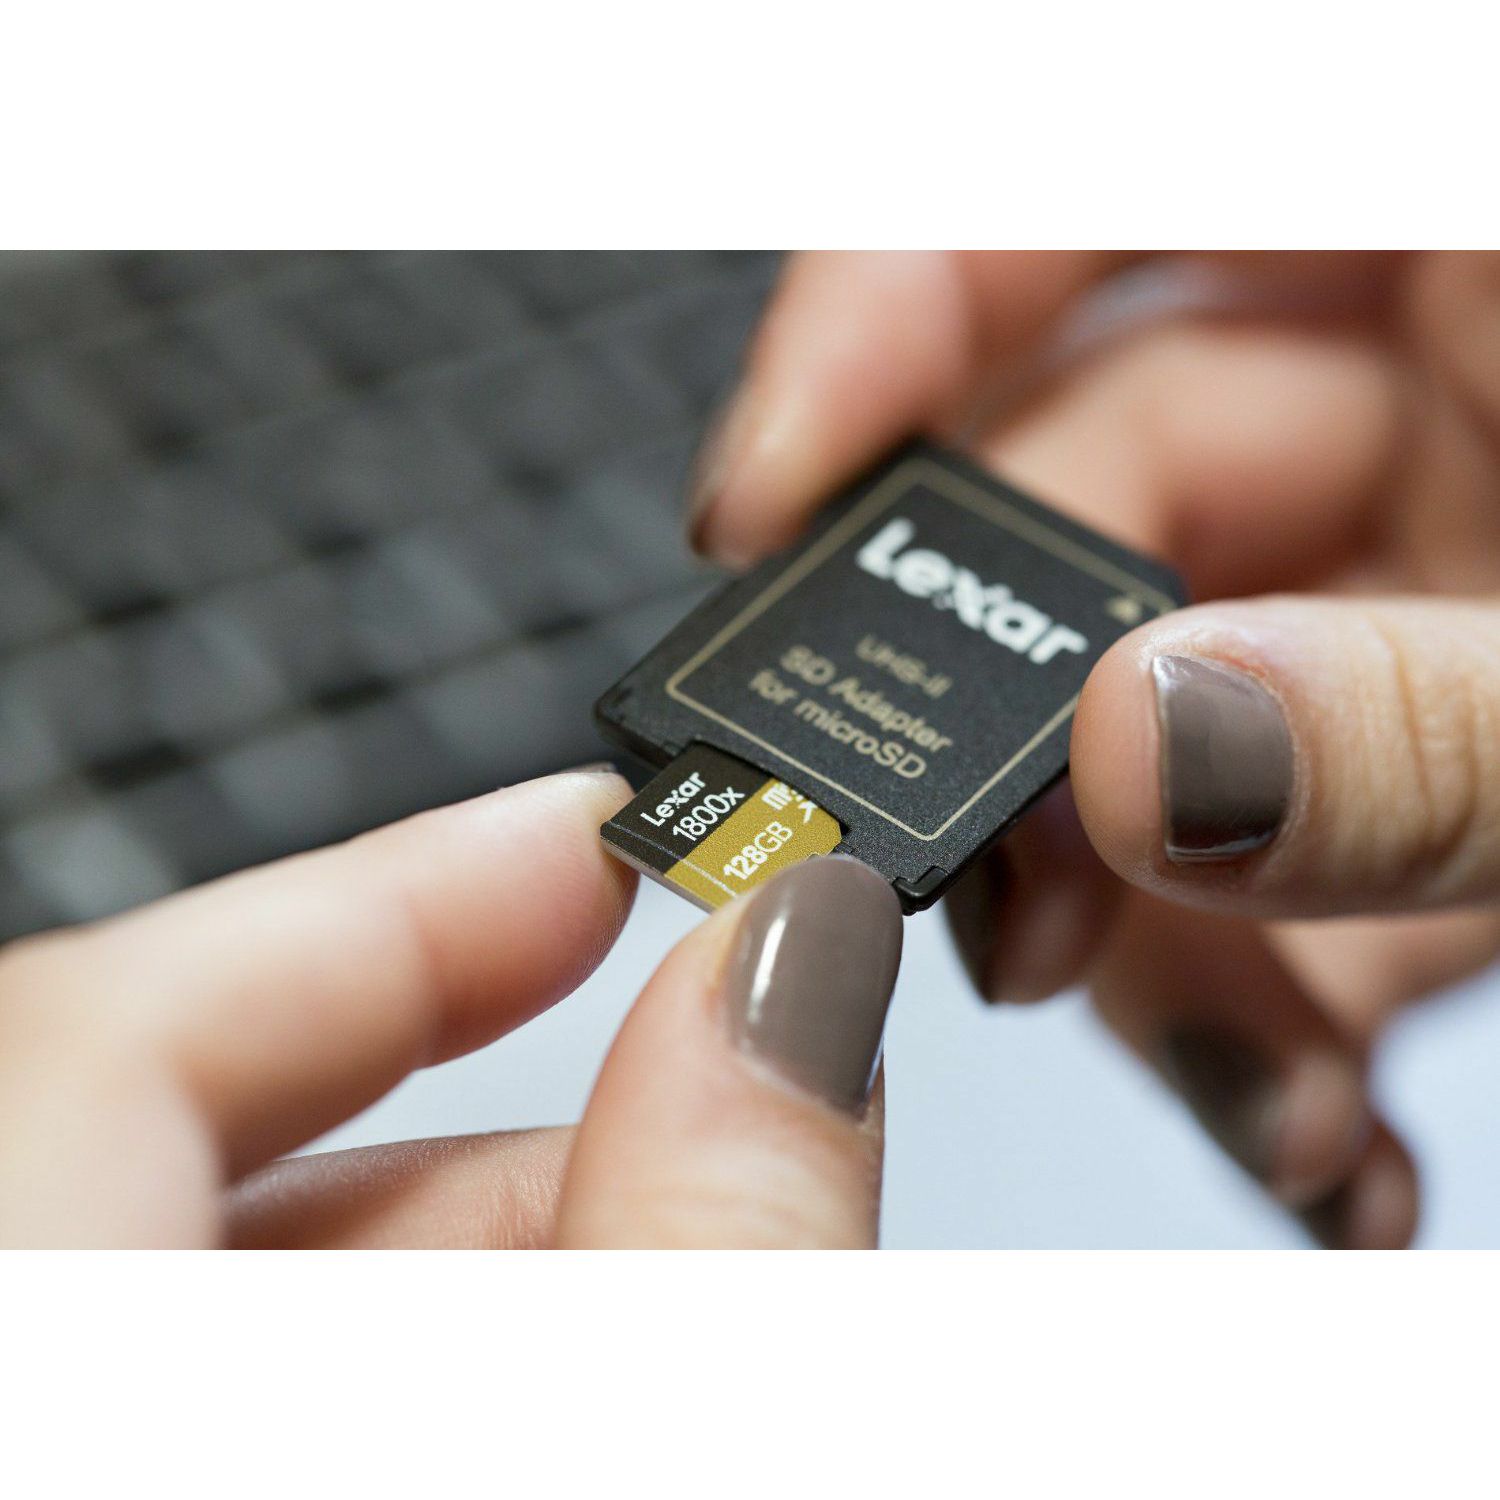 Lexar microSDXC 64GB 1800x 270MB/s UHS-II USB 3.0 Reader + adapter memorijska kartica sa adapterom LSDMI64GCRBEU1800R